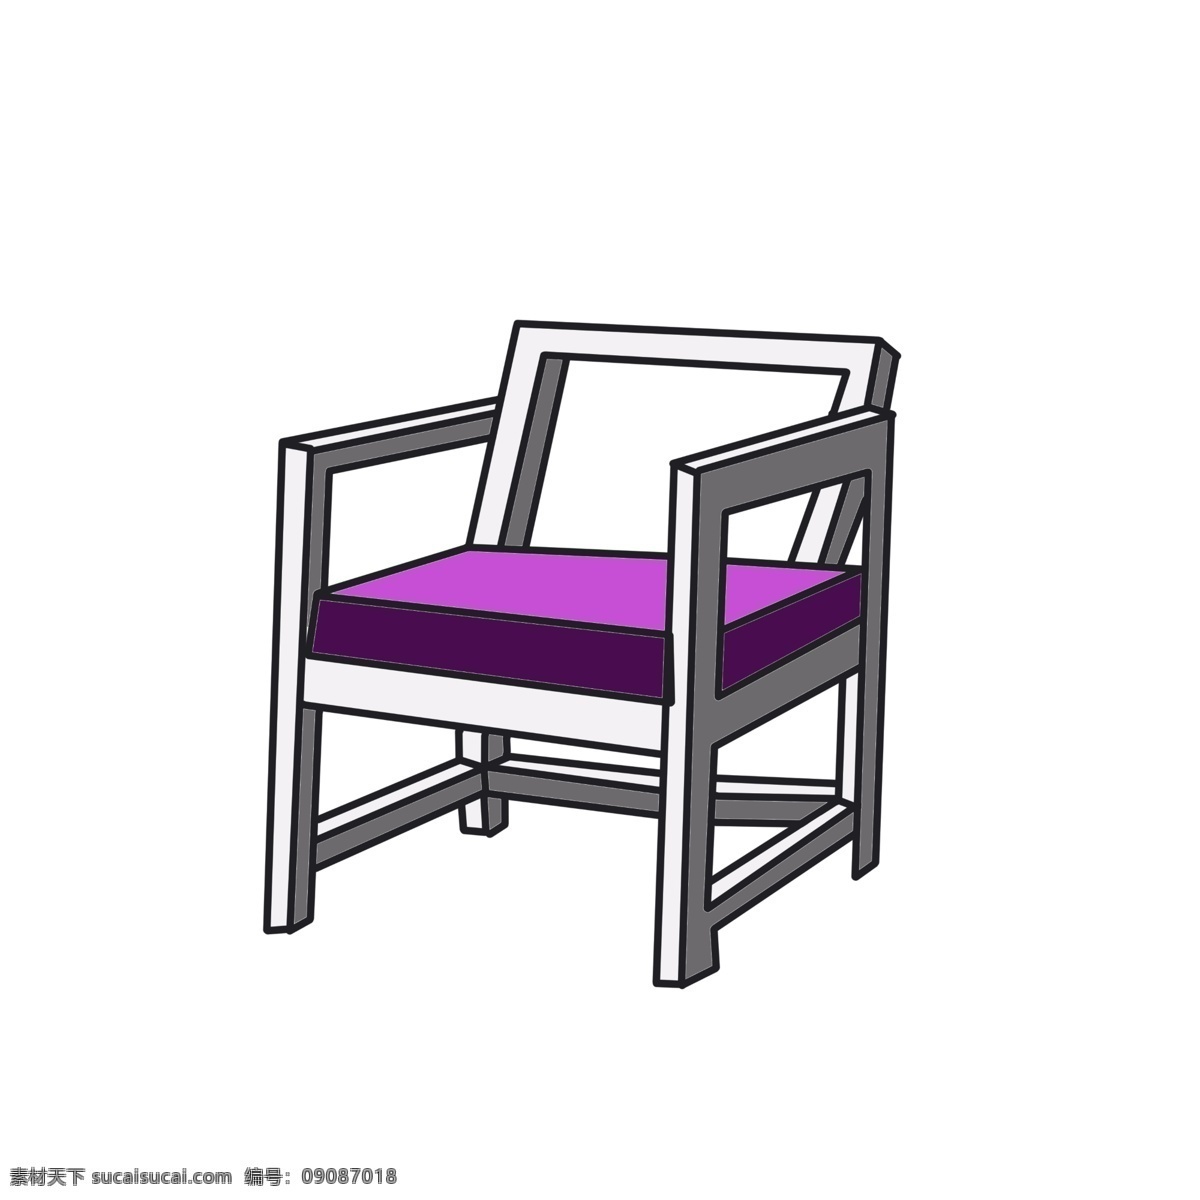 紫色 椅子 装饰 插画 紫色的椅子 漂亮的椅子 创意椅子 立体椅子 精美椅子 木头椅子 木质椅子